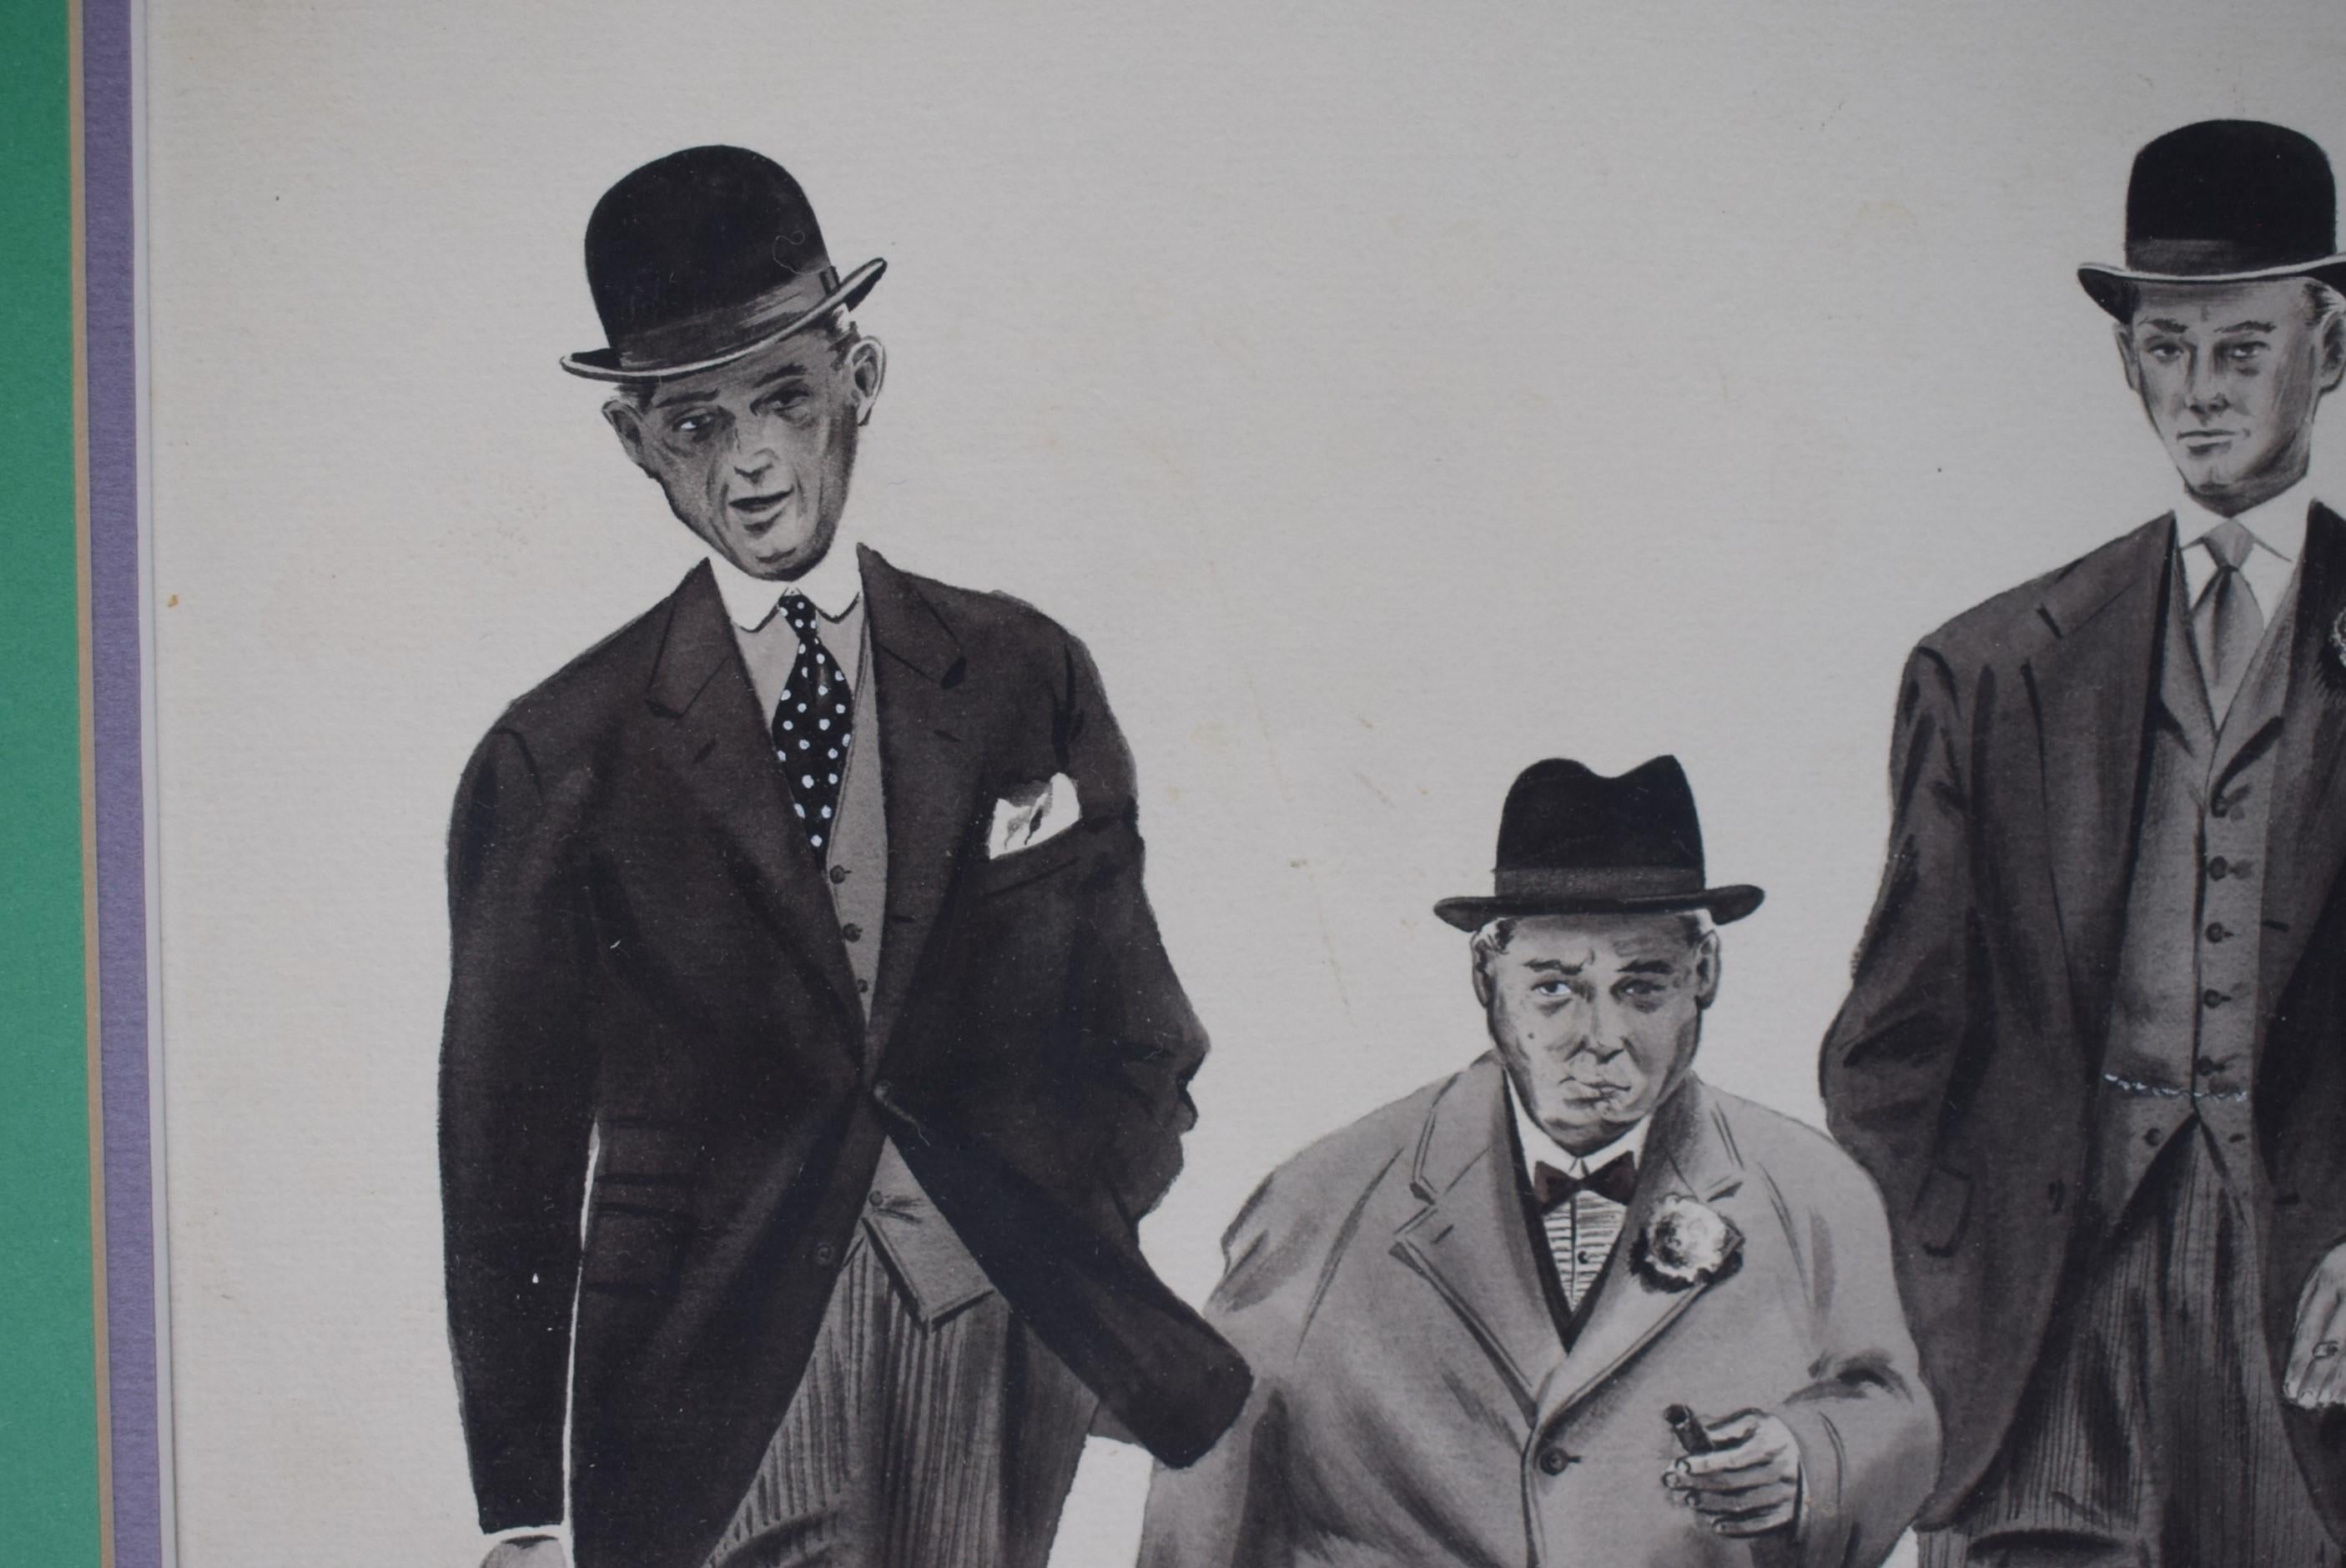 Klassische Federzeichnung, die drei adrett gekleidete Londoner Herren darstellt (um 1930)

Kunst Sz: 13 